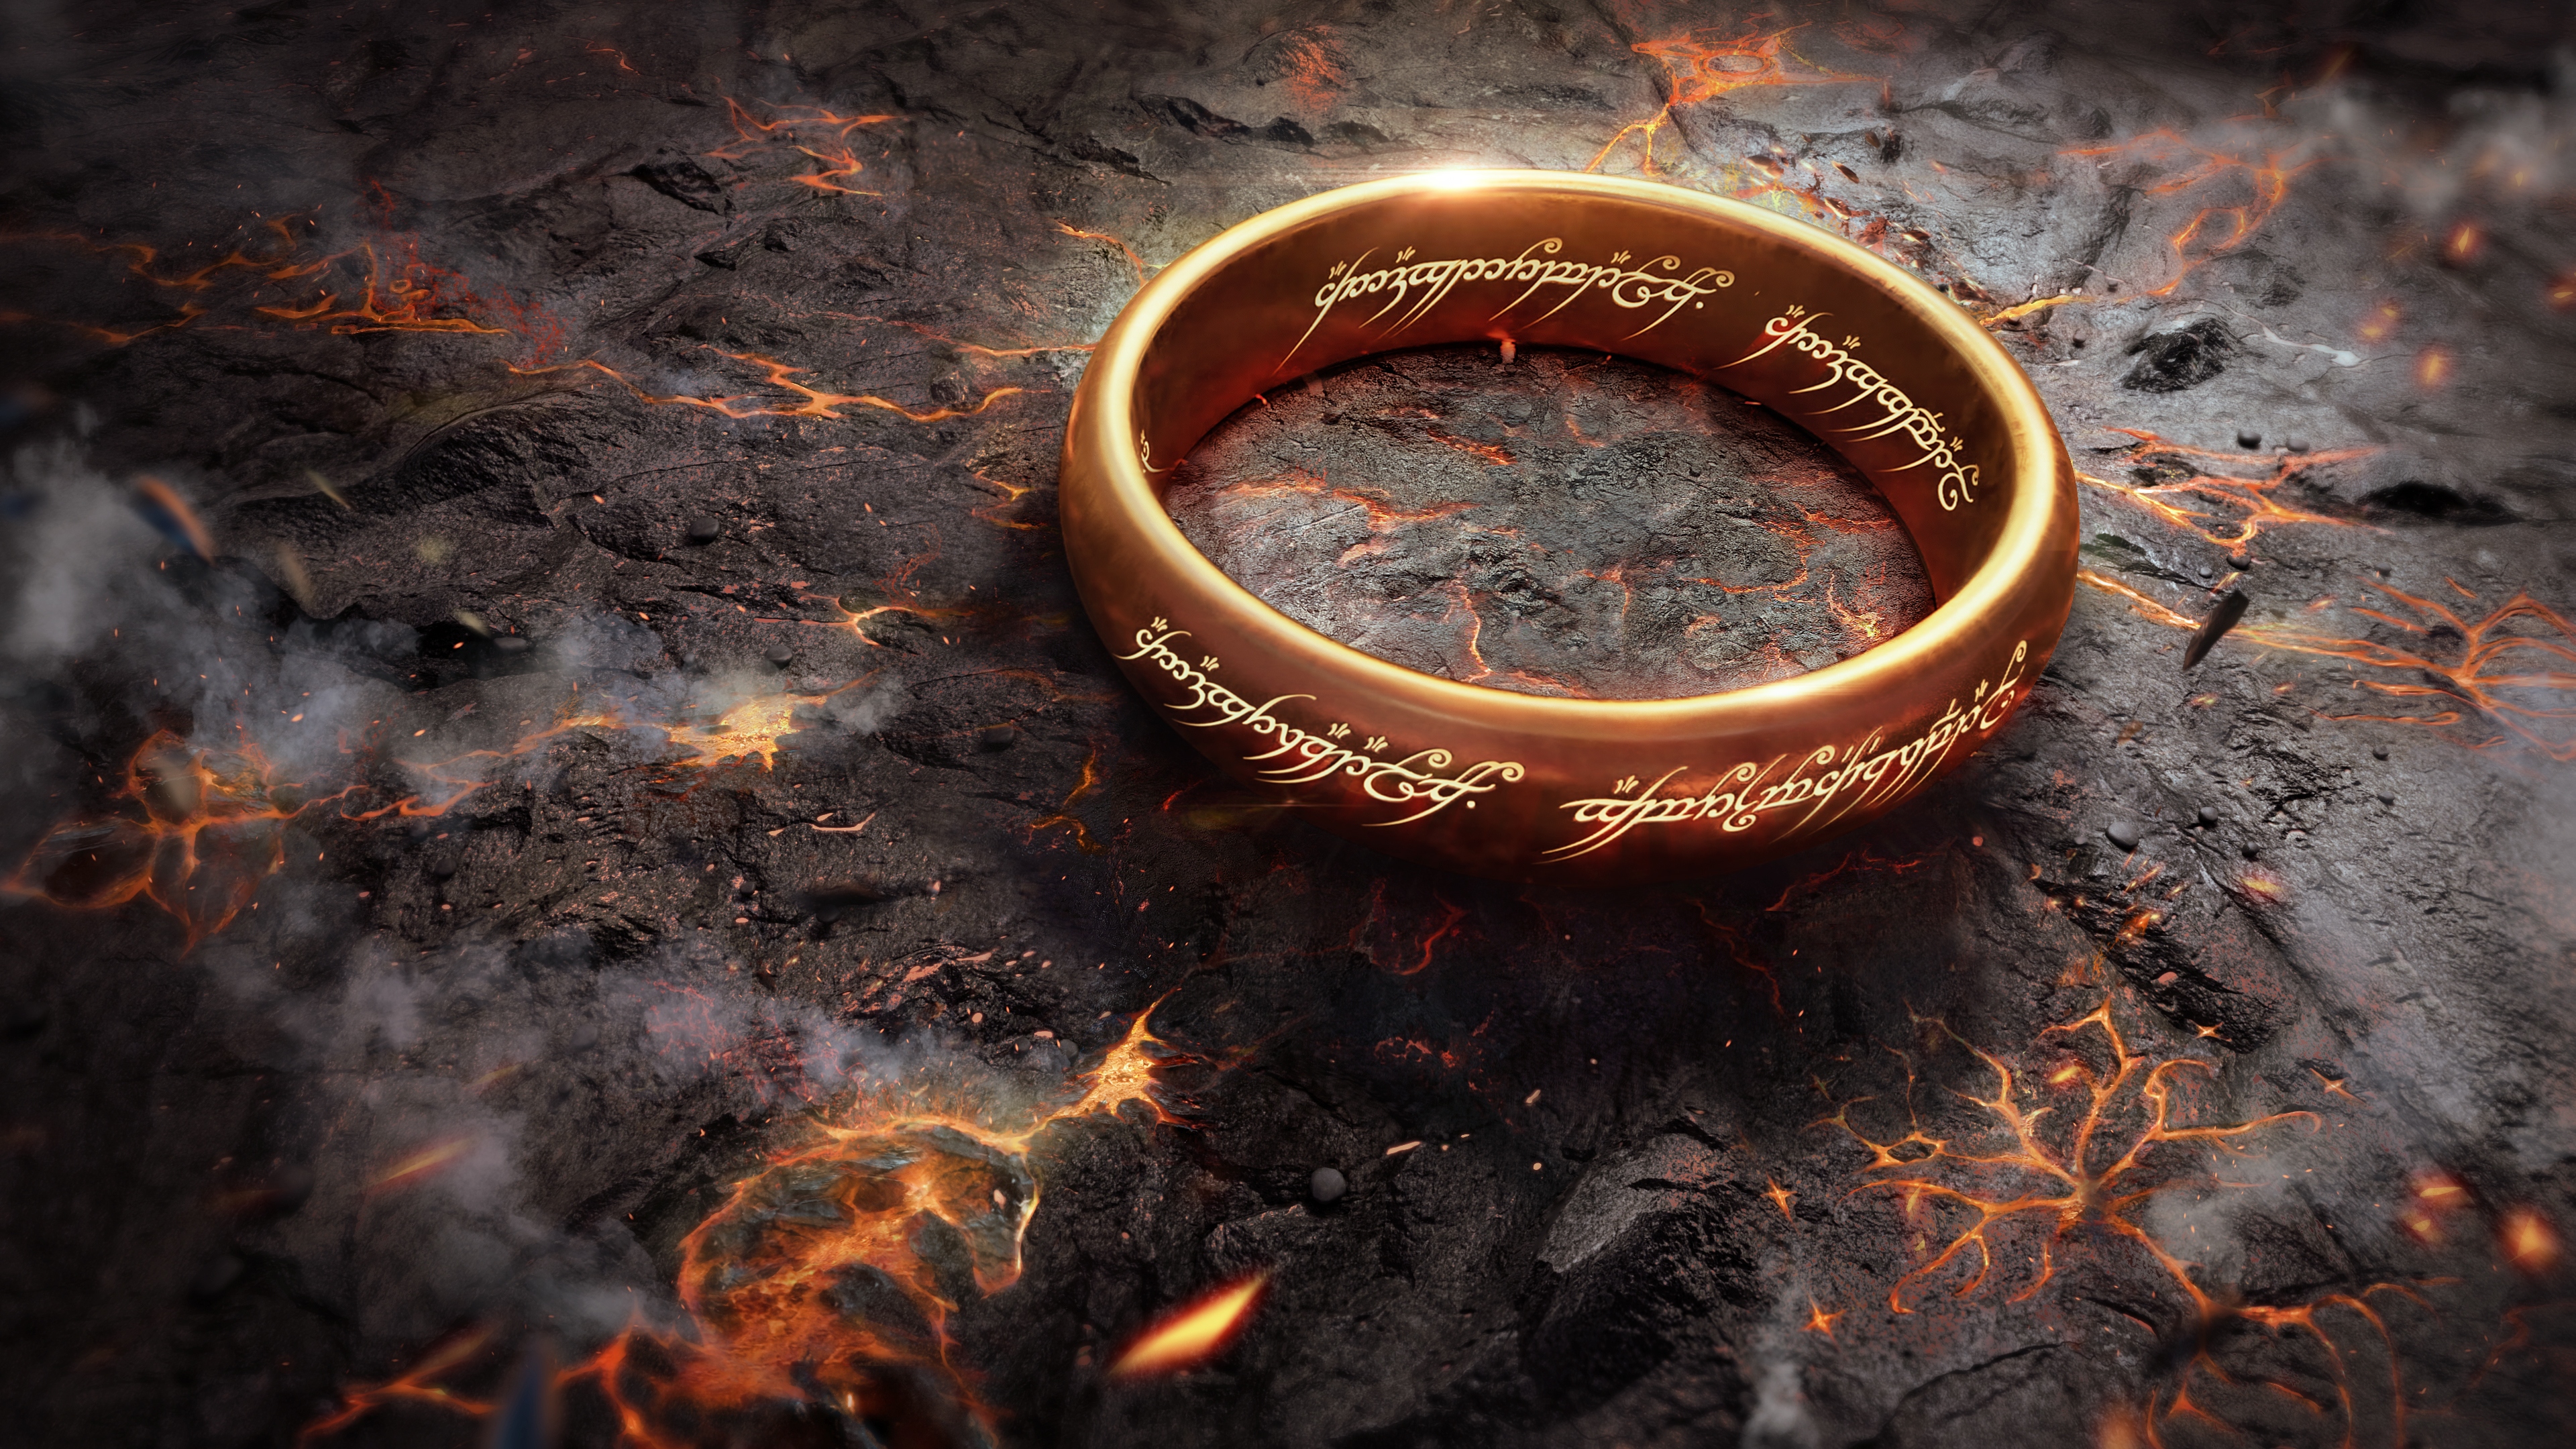 Бесплатное фото Золотое кольцо из фильма Властелин колец